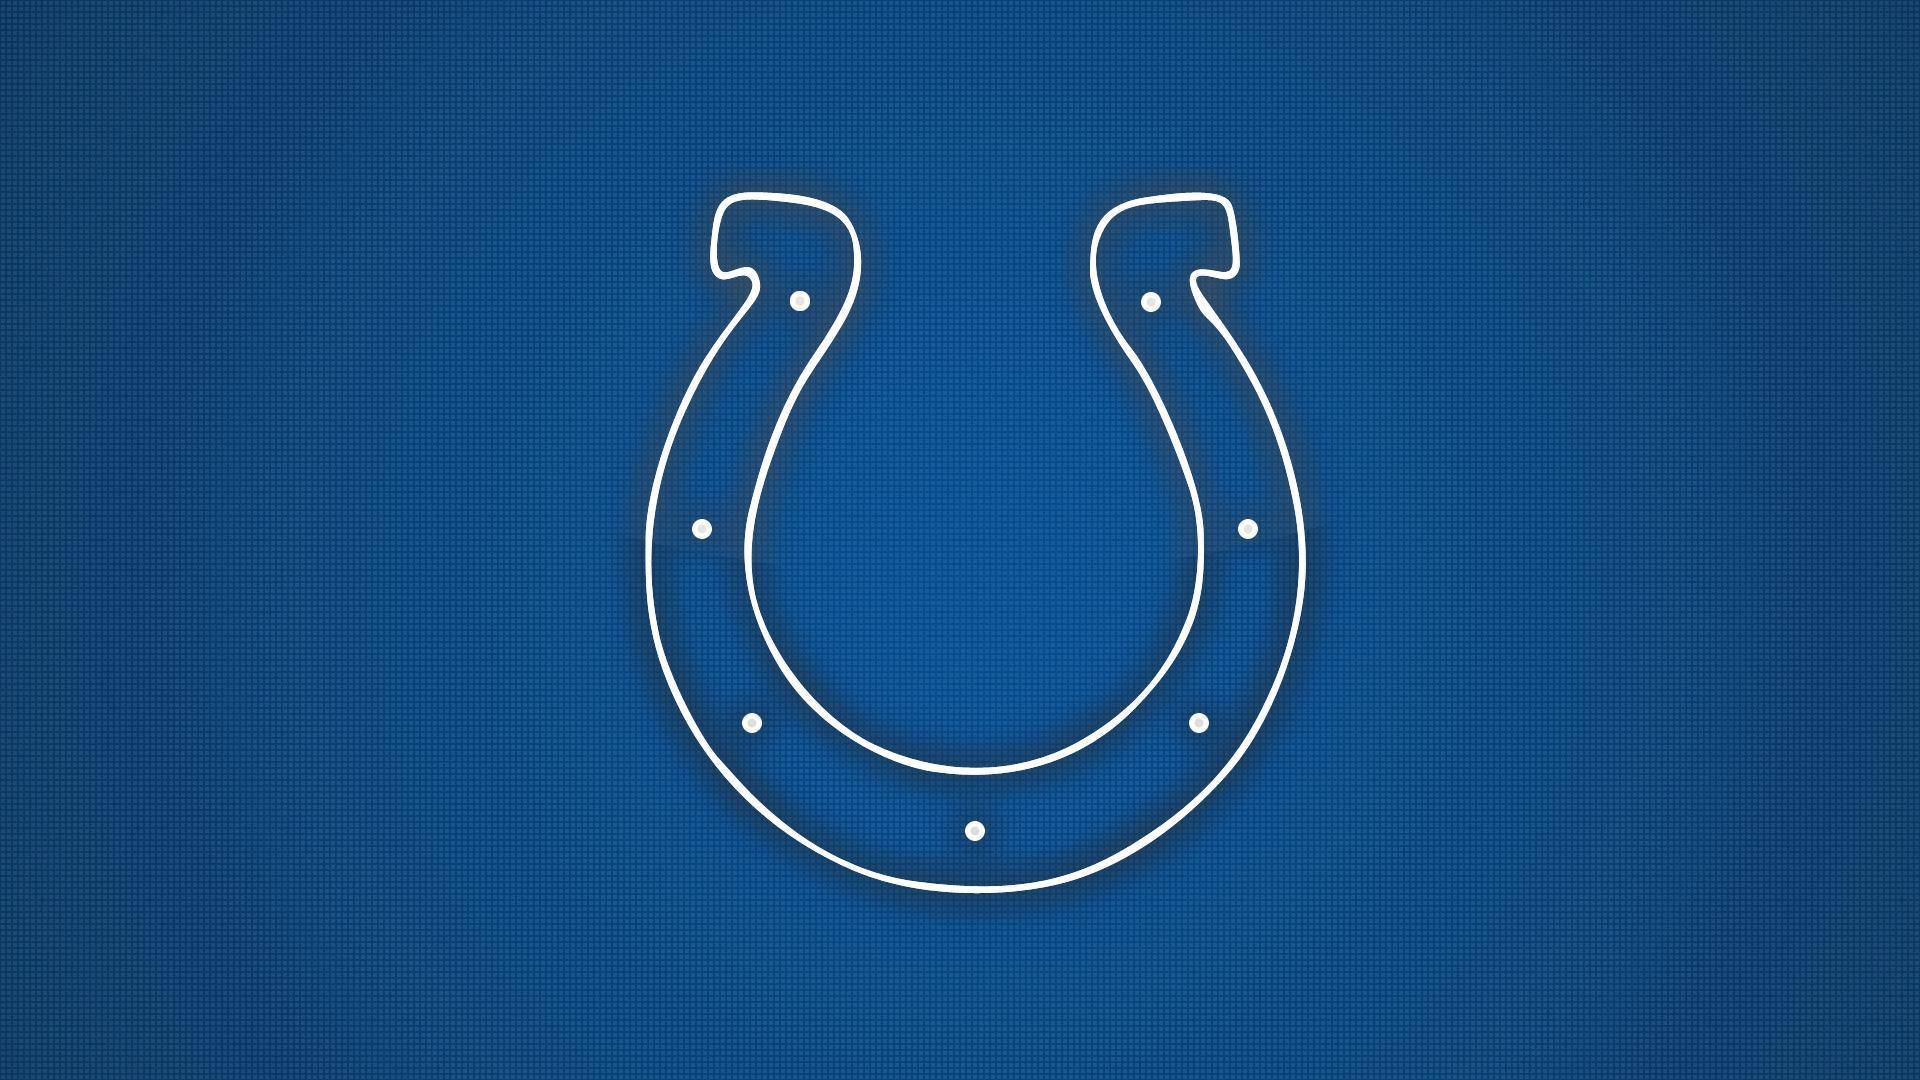 Símboloazul De Los Indianapolis Colts. Fondo de pantalla